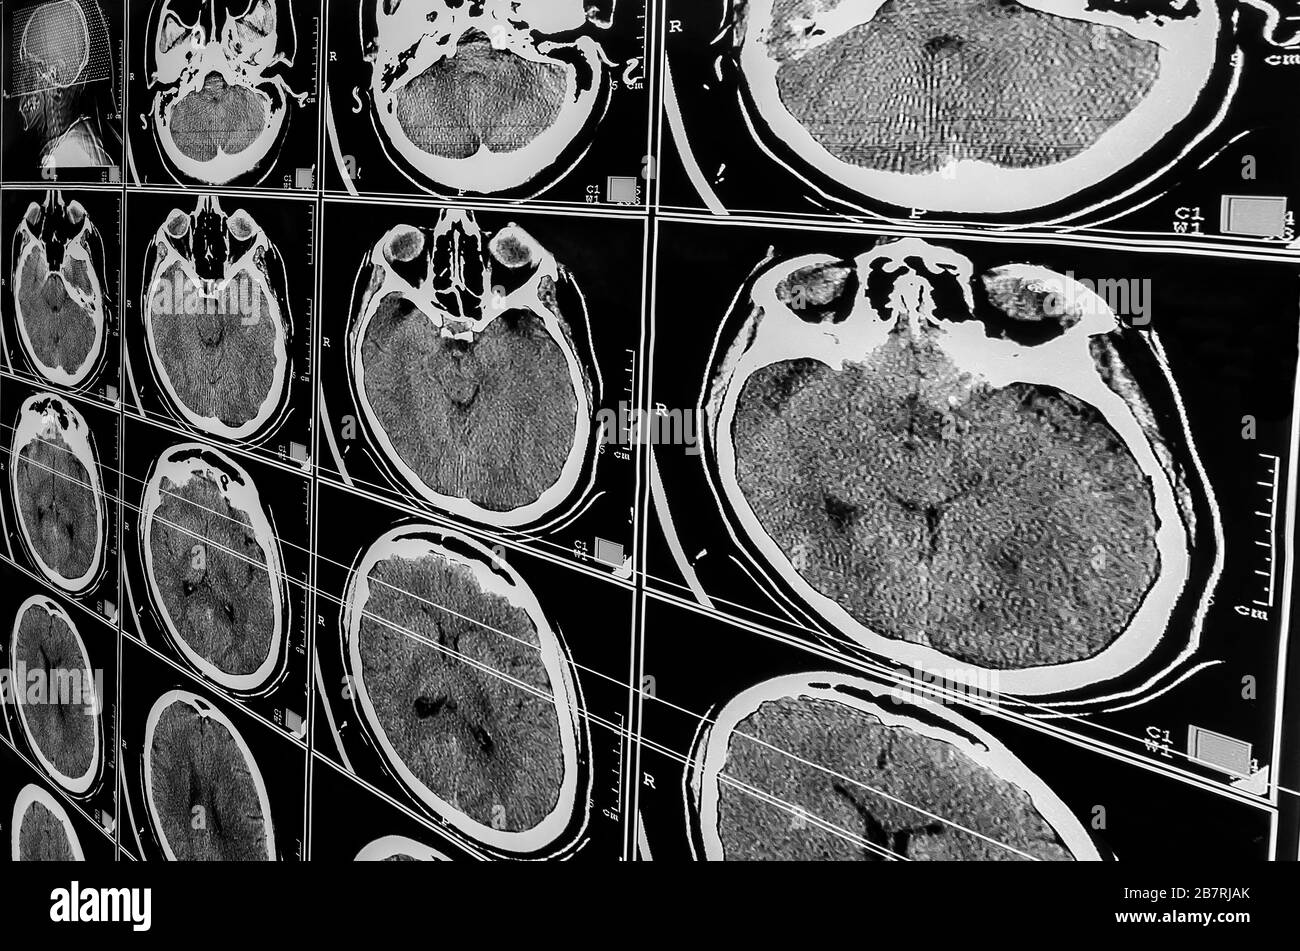 Elektromagnetische Tomographie Gehirn. Sequenz vertikaler Abschnitte eines menschlichen Gehirns - MRT-Messung. Echte Hirn-MRT-Folie eines Mädchens. Minimale Bearbeitung zum Speichern Stockfoto